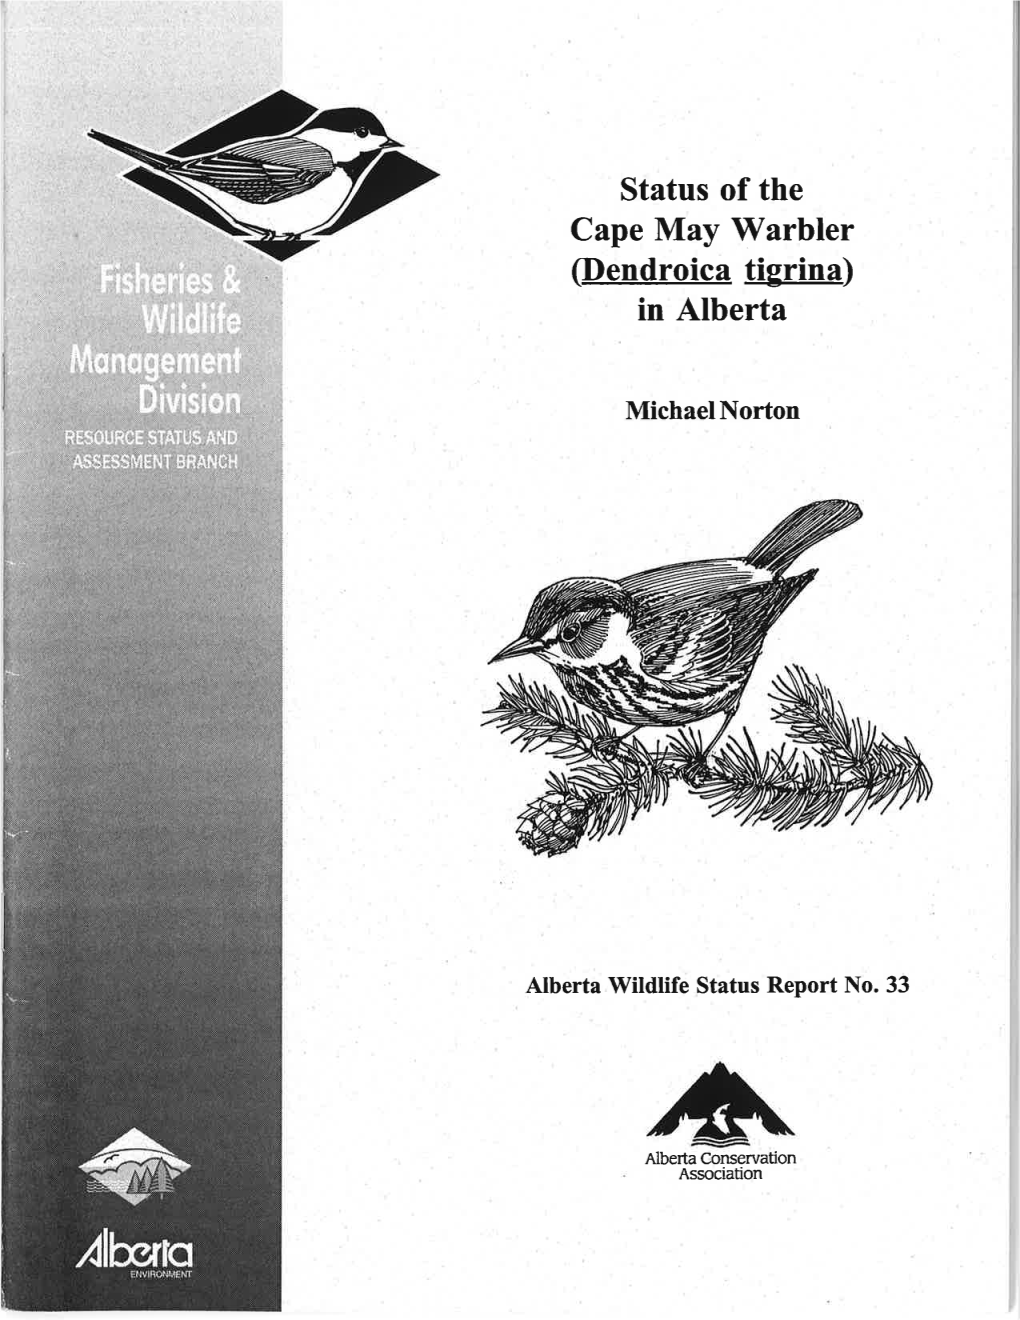 Status of Cape May Warbler in Alberta 2001